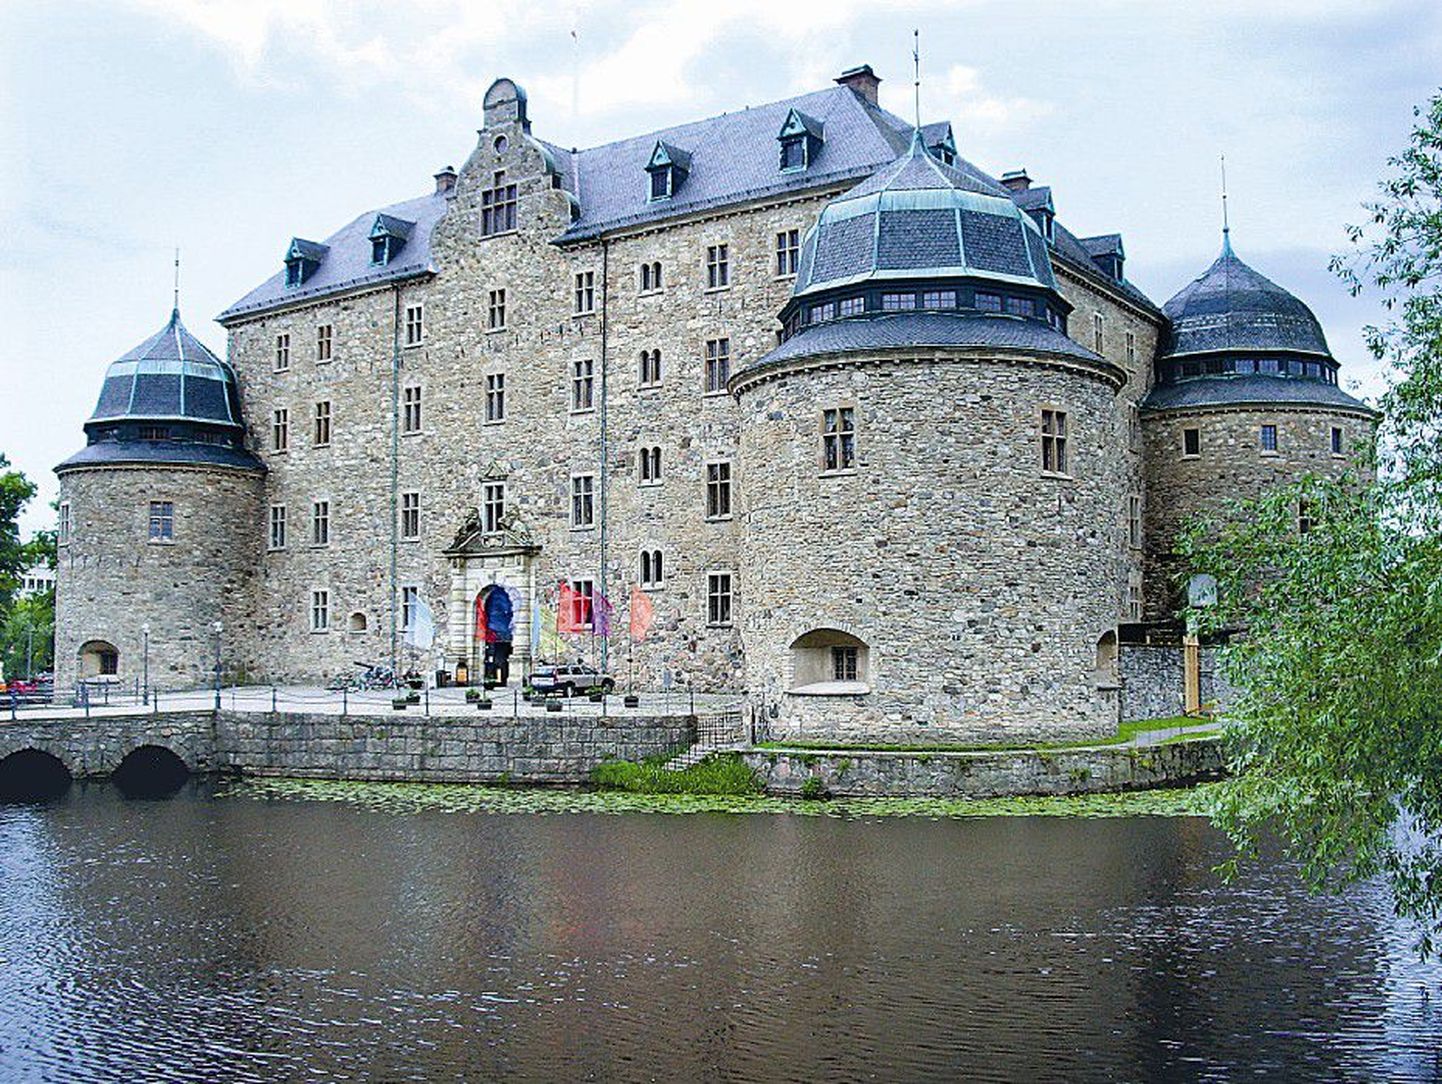 Örebro au ja uhkus on Slotteti loss, mida seda linna külastades kindlasti nägema peab.